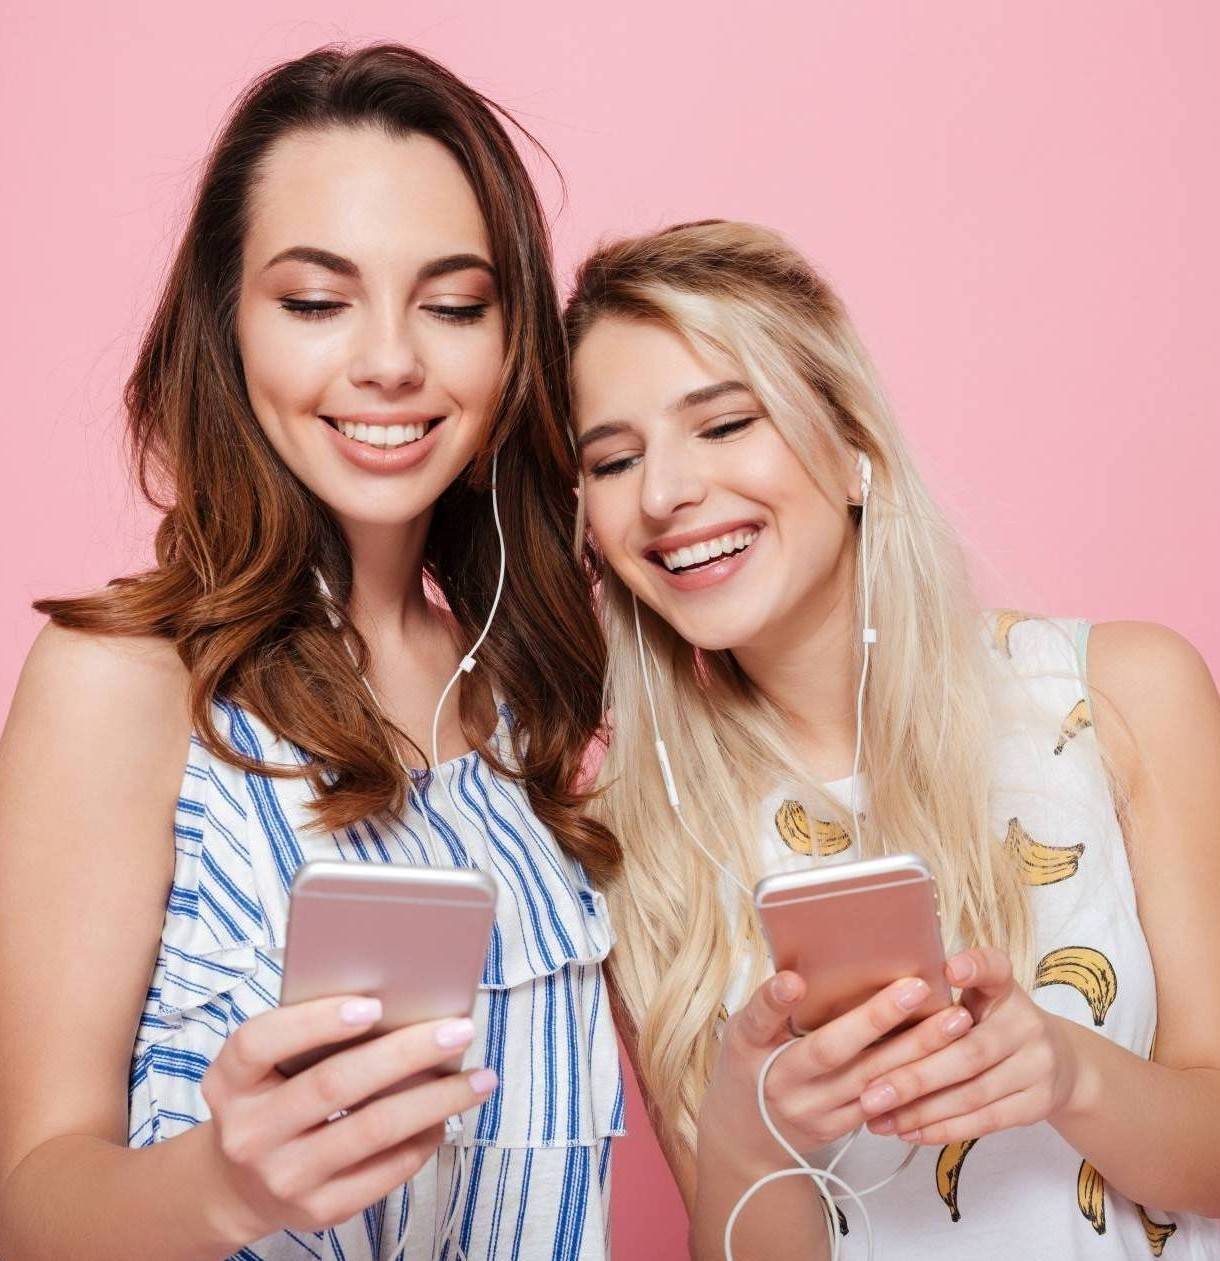 Zwei junge Frauen hören einen Podcast und lächeln